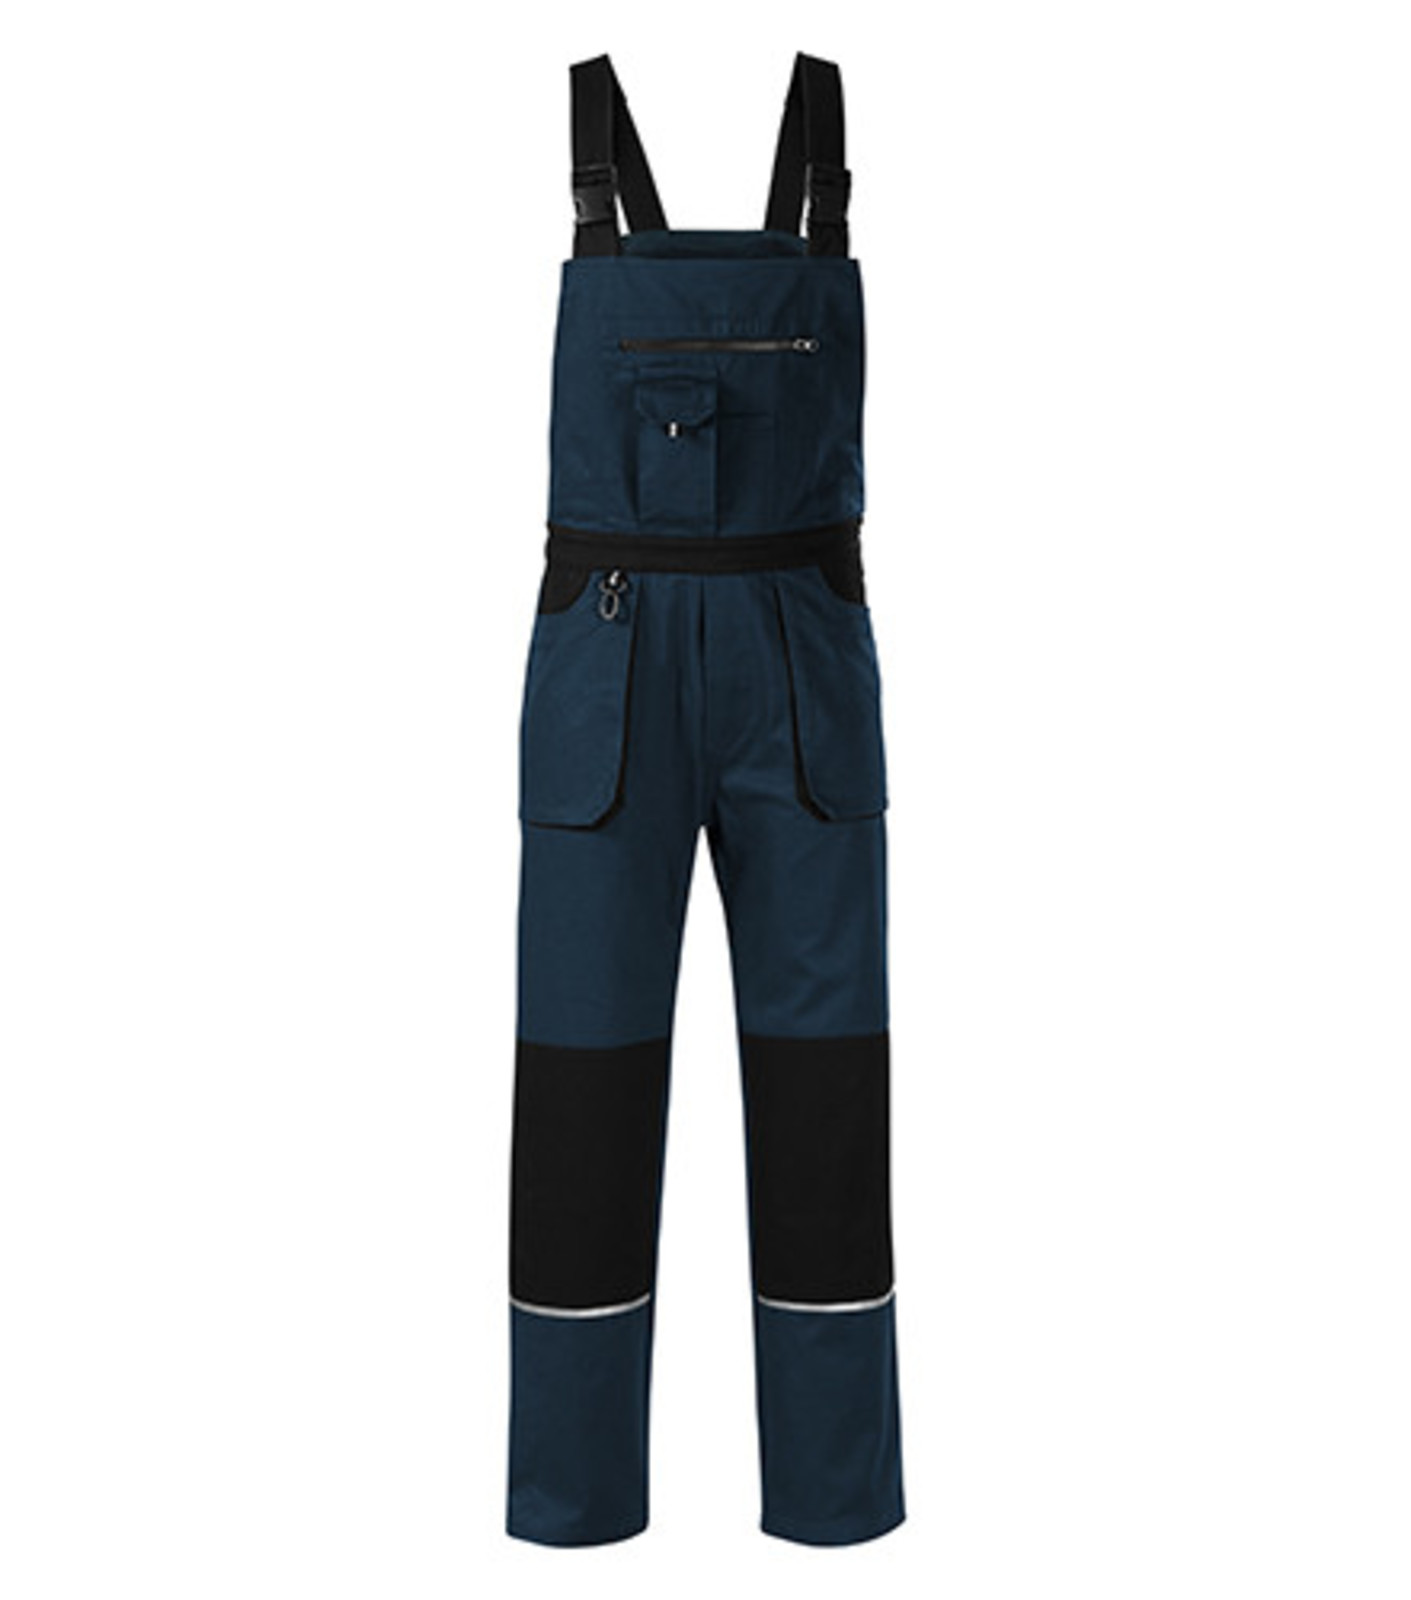 Montérkové nohavice s náprsenkou Adler Woody W02 - veľkosť: 52-54, farba: tmavo modrá